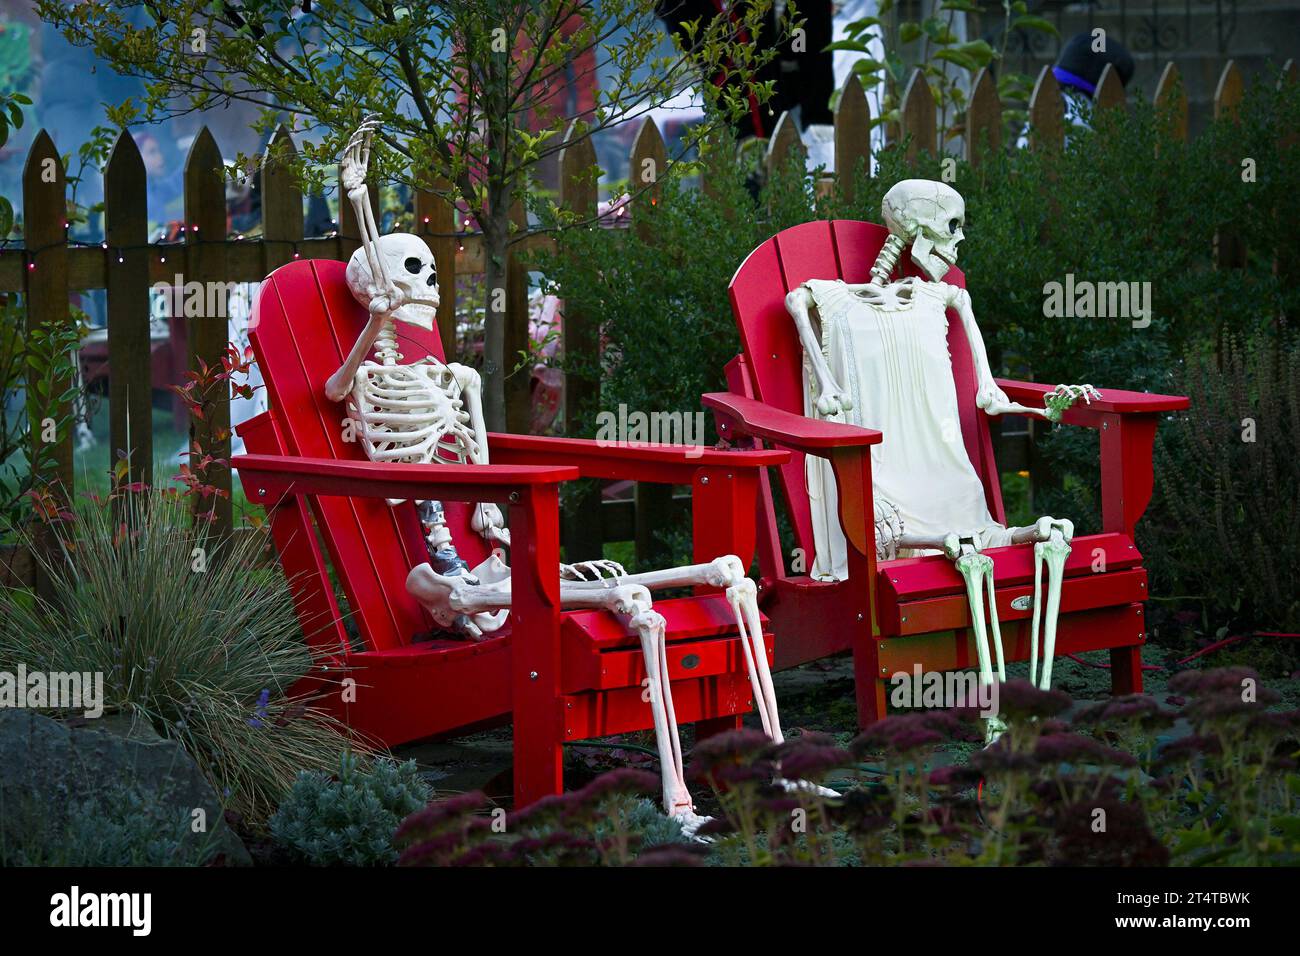 Halloween, squelettes se prélassant dans des chaises Adirondack rouges Banque D'Images